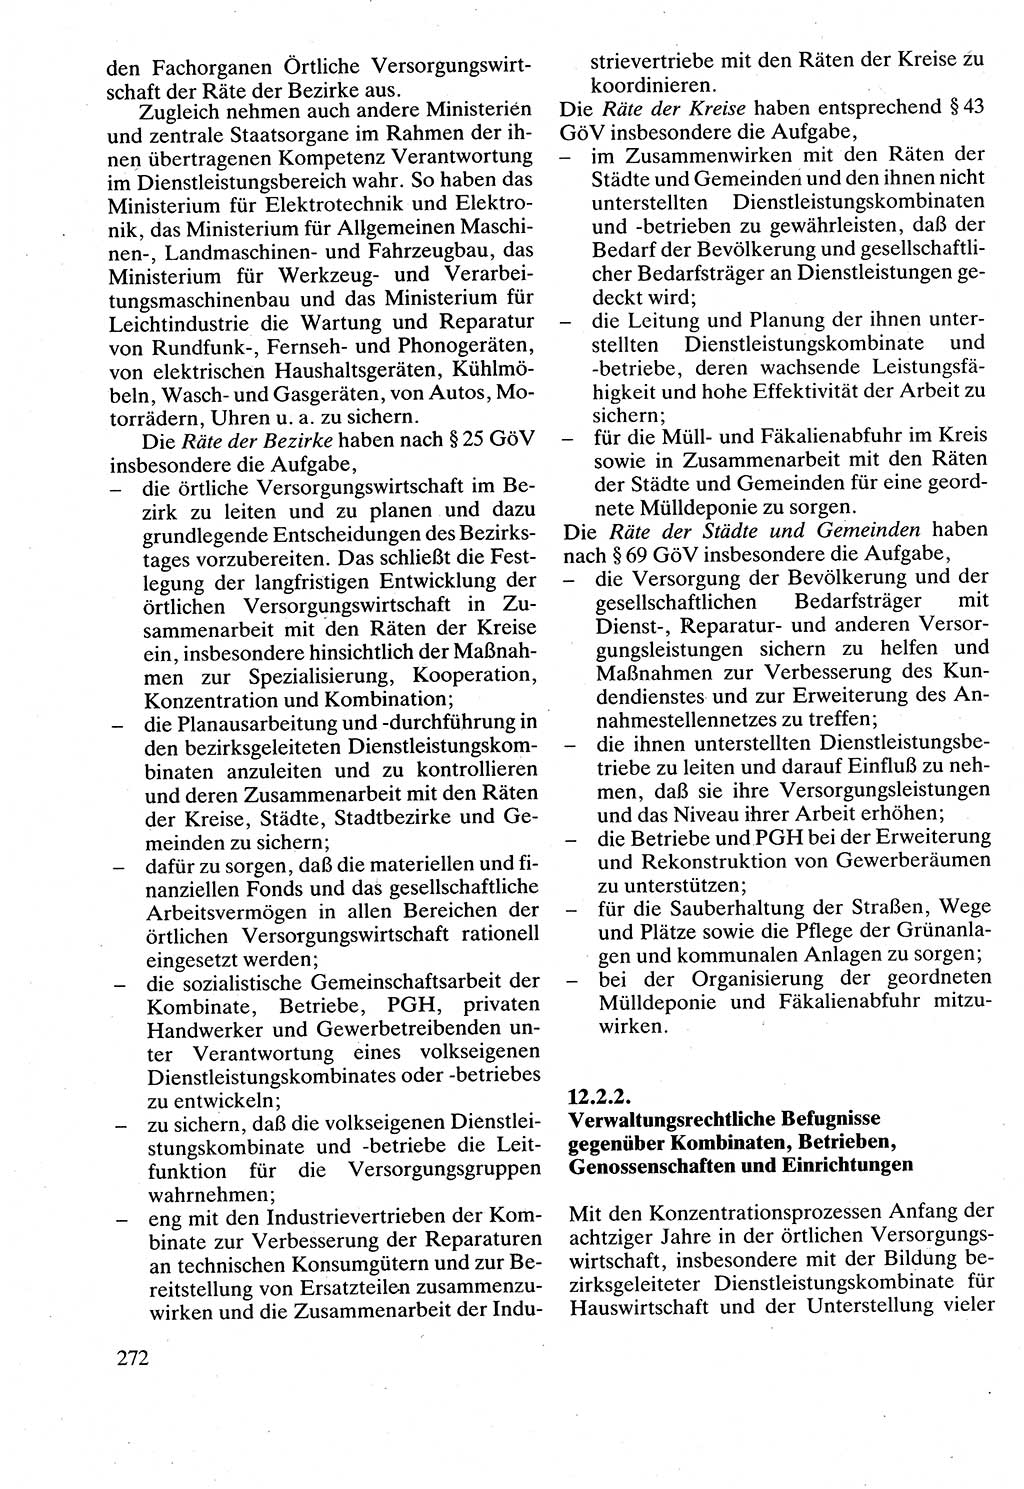 Verwaltungsrecht [Deutsche Demokratische Republik (DDR)], Lehrbuch 1988, Seite 272 (Verw.-R. DDR Lb. 1988, S. 272)